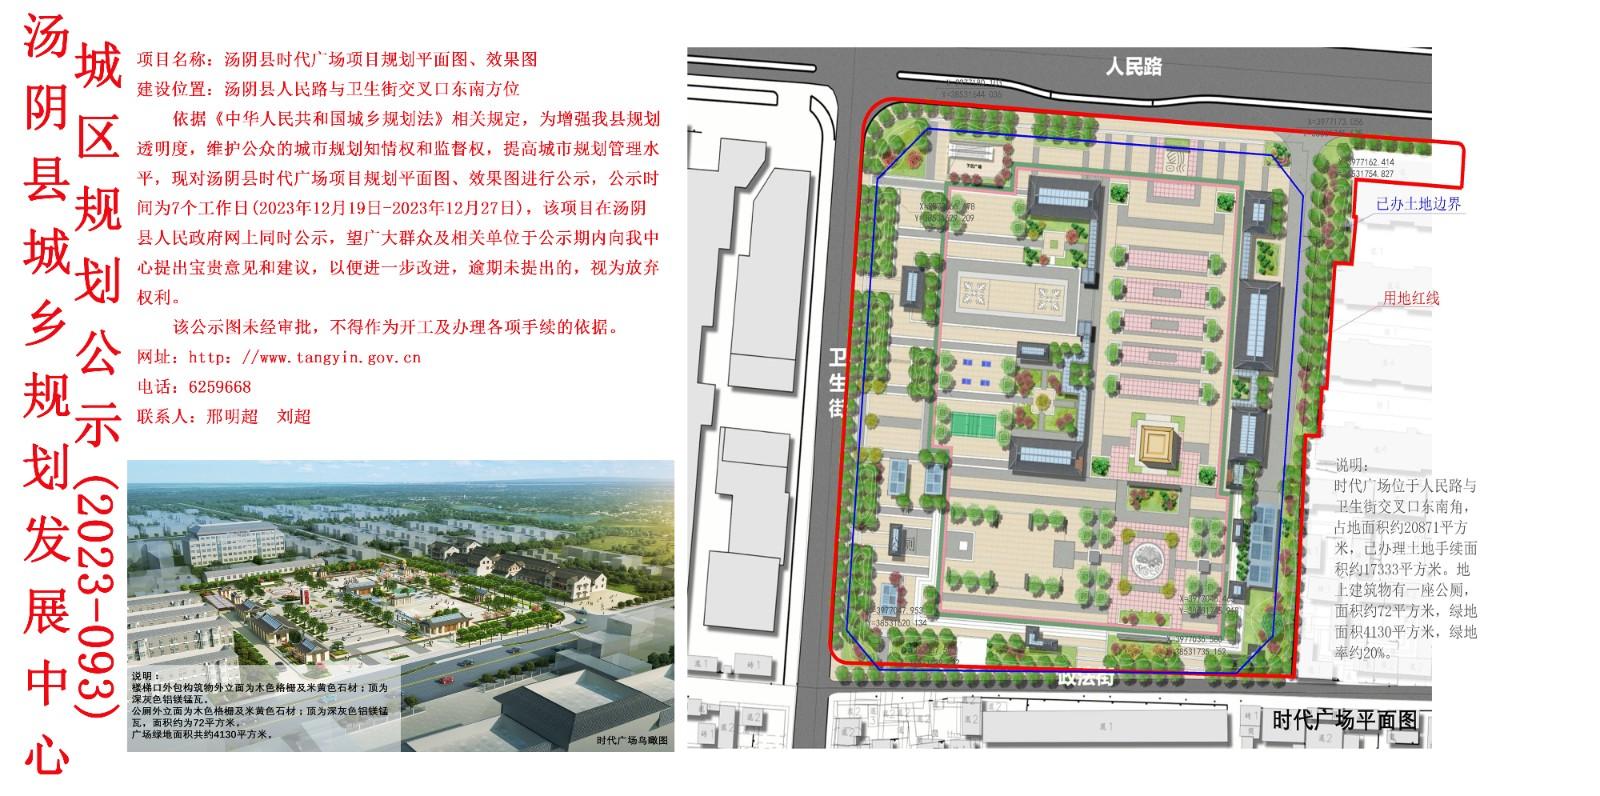 汤阴县城乡规划发展中心规划批后公示2023年410523202300026（建筑）号--邺南盛棠小区